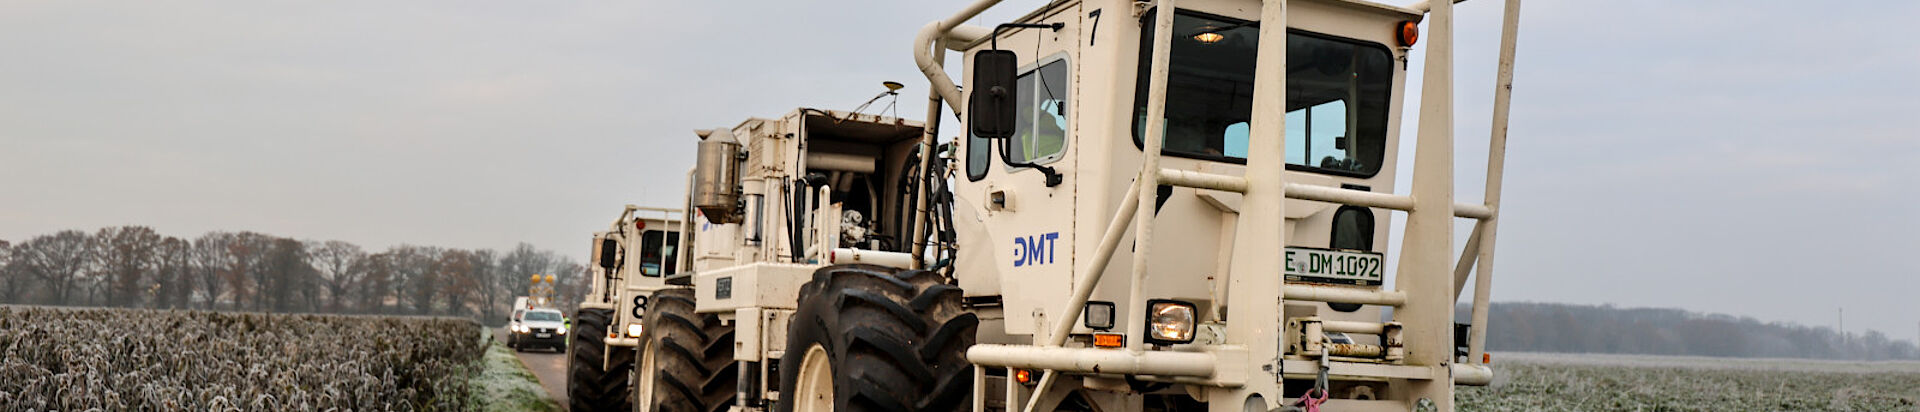 DMT Group - Vibro Trucks für die seismische Exploration des Untergrundes